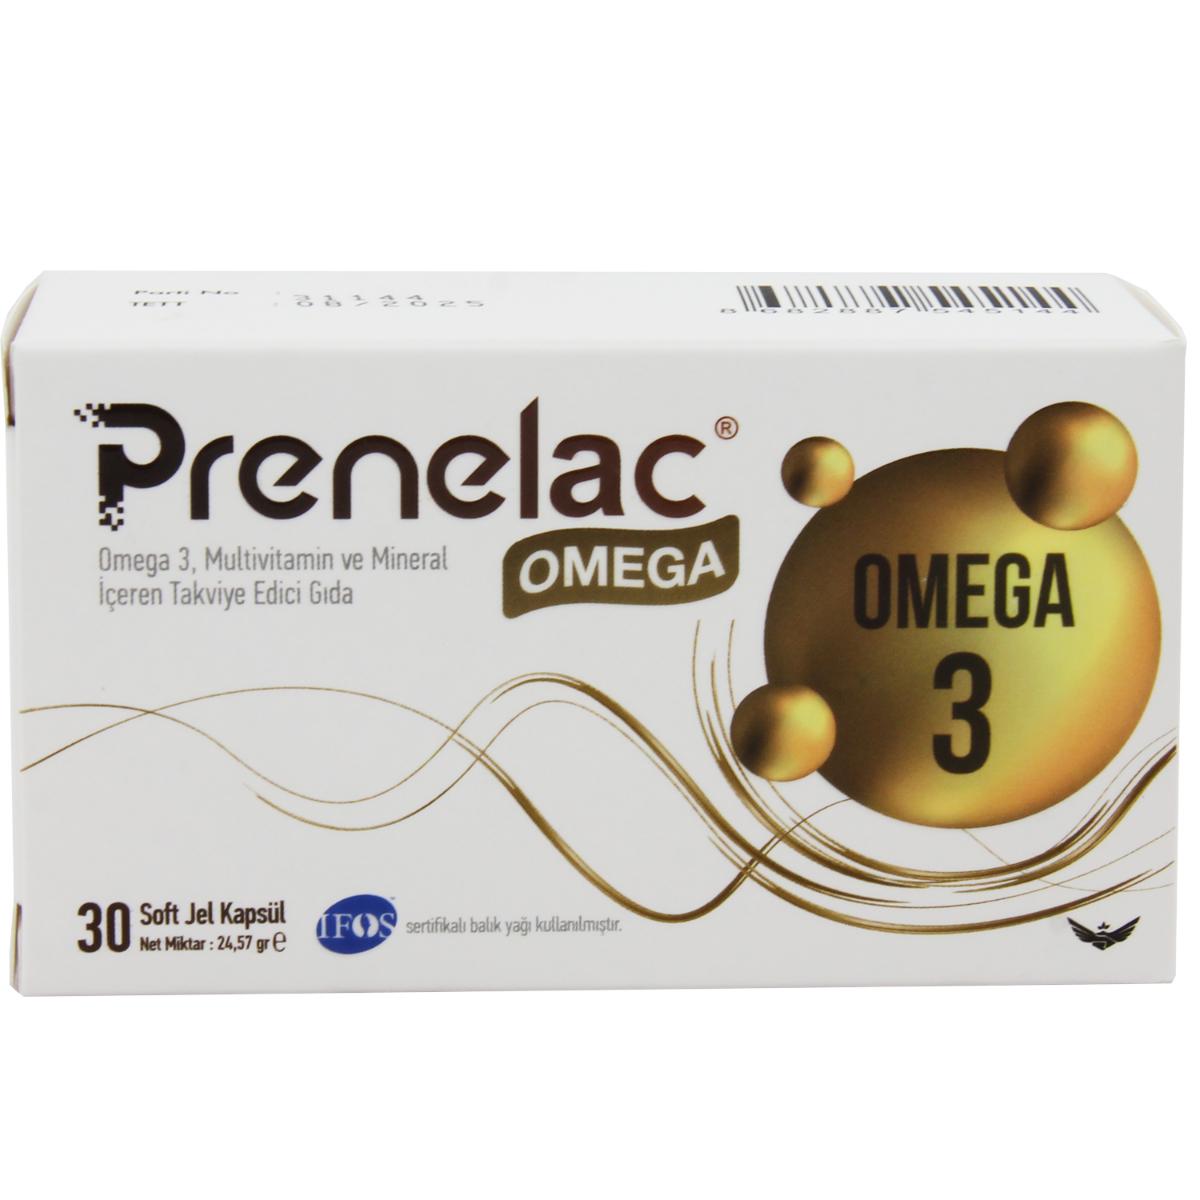 Prenelac Omega Sade Unisex Vitamin 30 Tablet